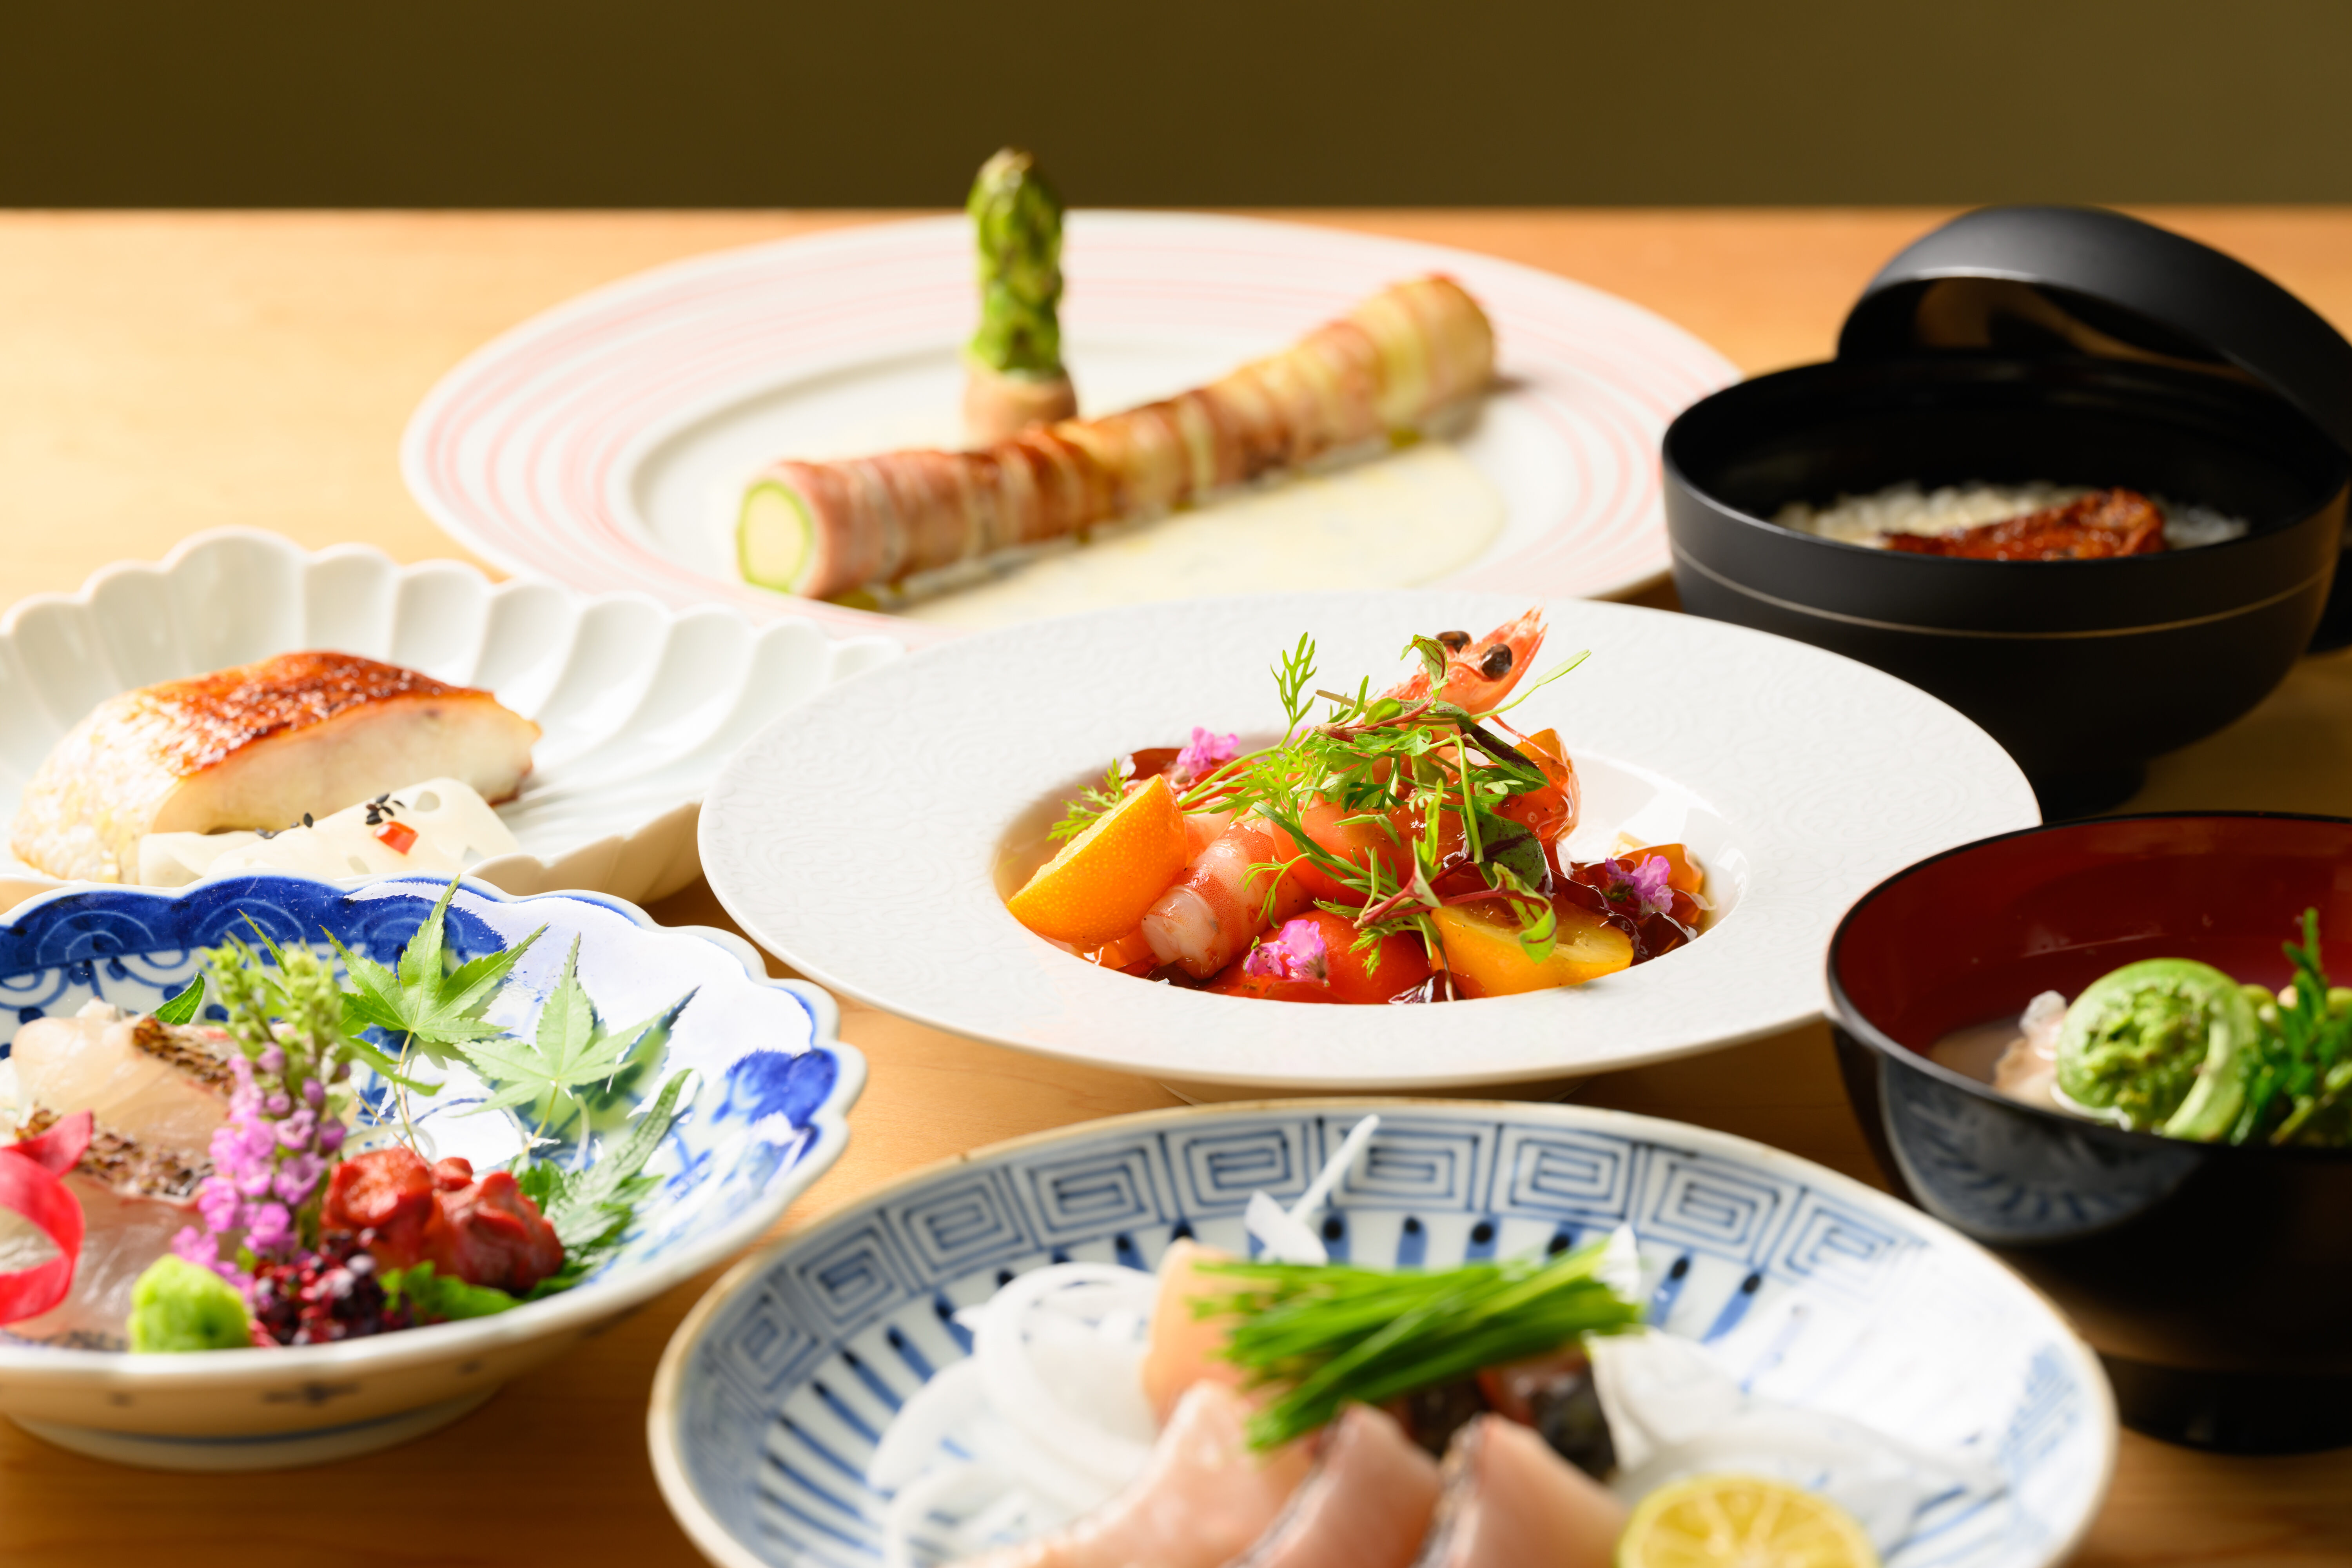 広島市中区・胡町の和食「日本料理 まめ福」さんのクチコミレポート。接待・記念日・お祝い・日常使いに人気の海鮮を中心とした創作和食